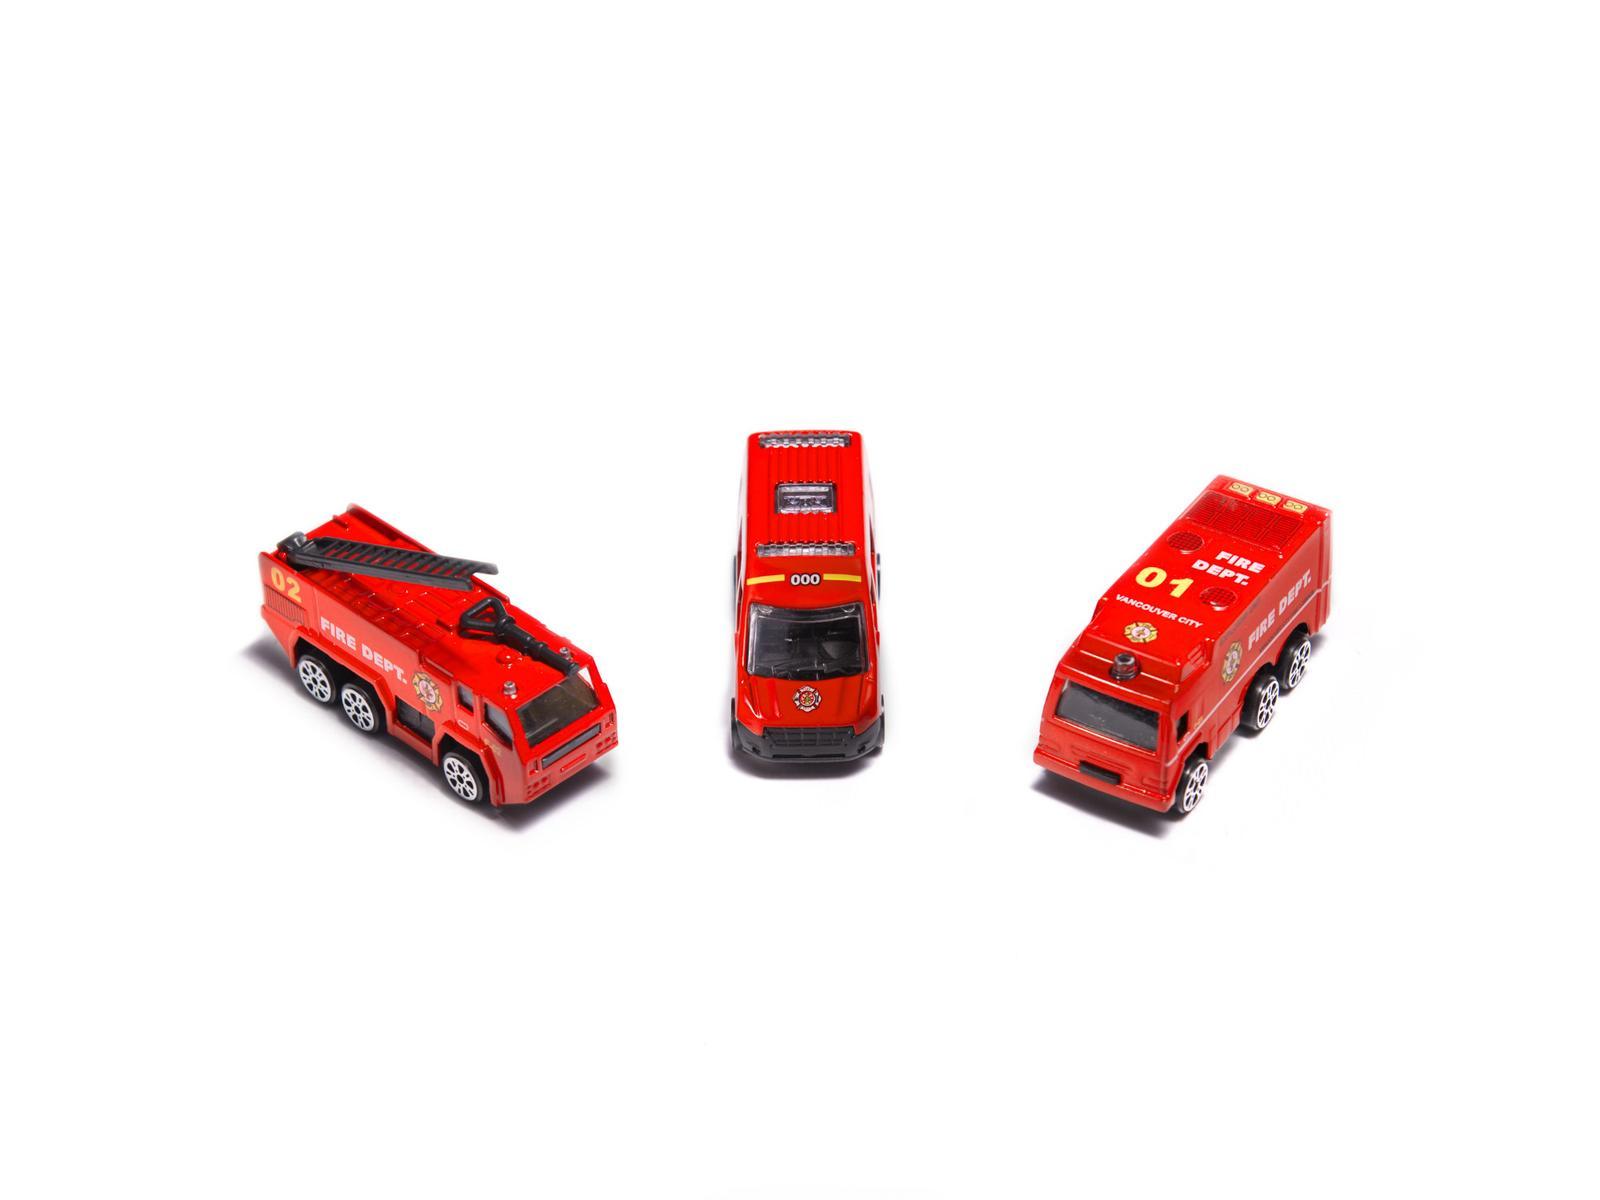 Transporter samolot + 3 pojazdy straż pożarna zabawka dla dzieci czerwona 41,5x31,5x14 cm nr. 11